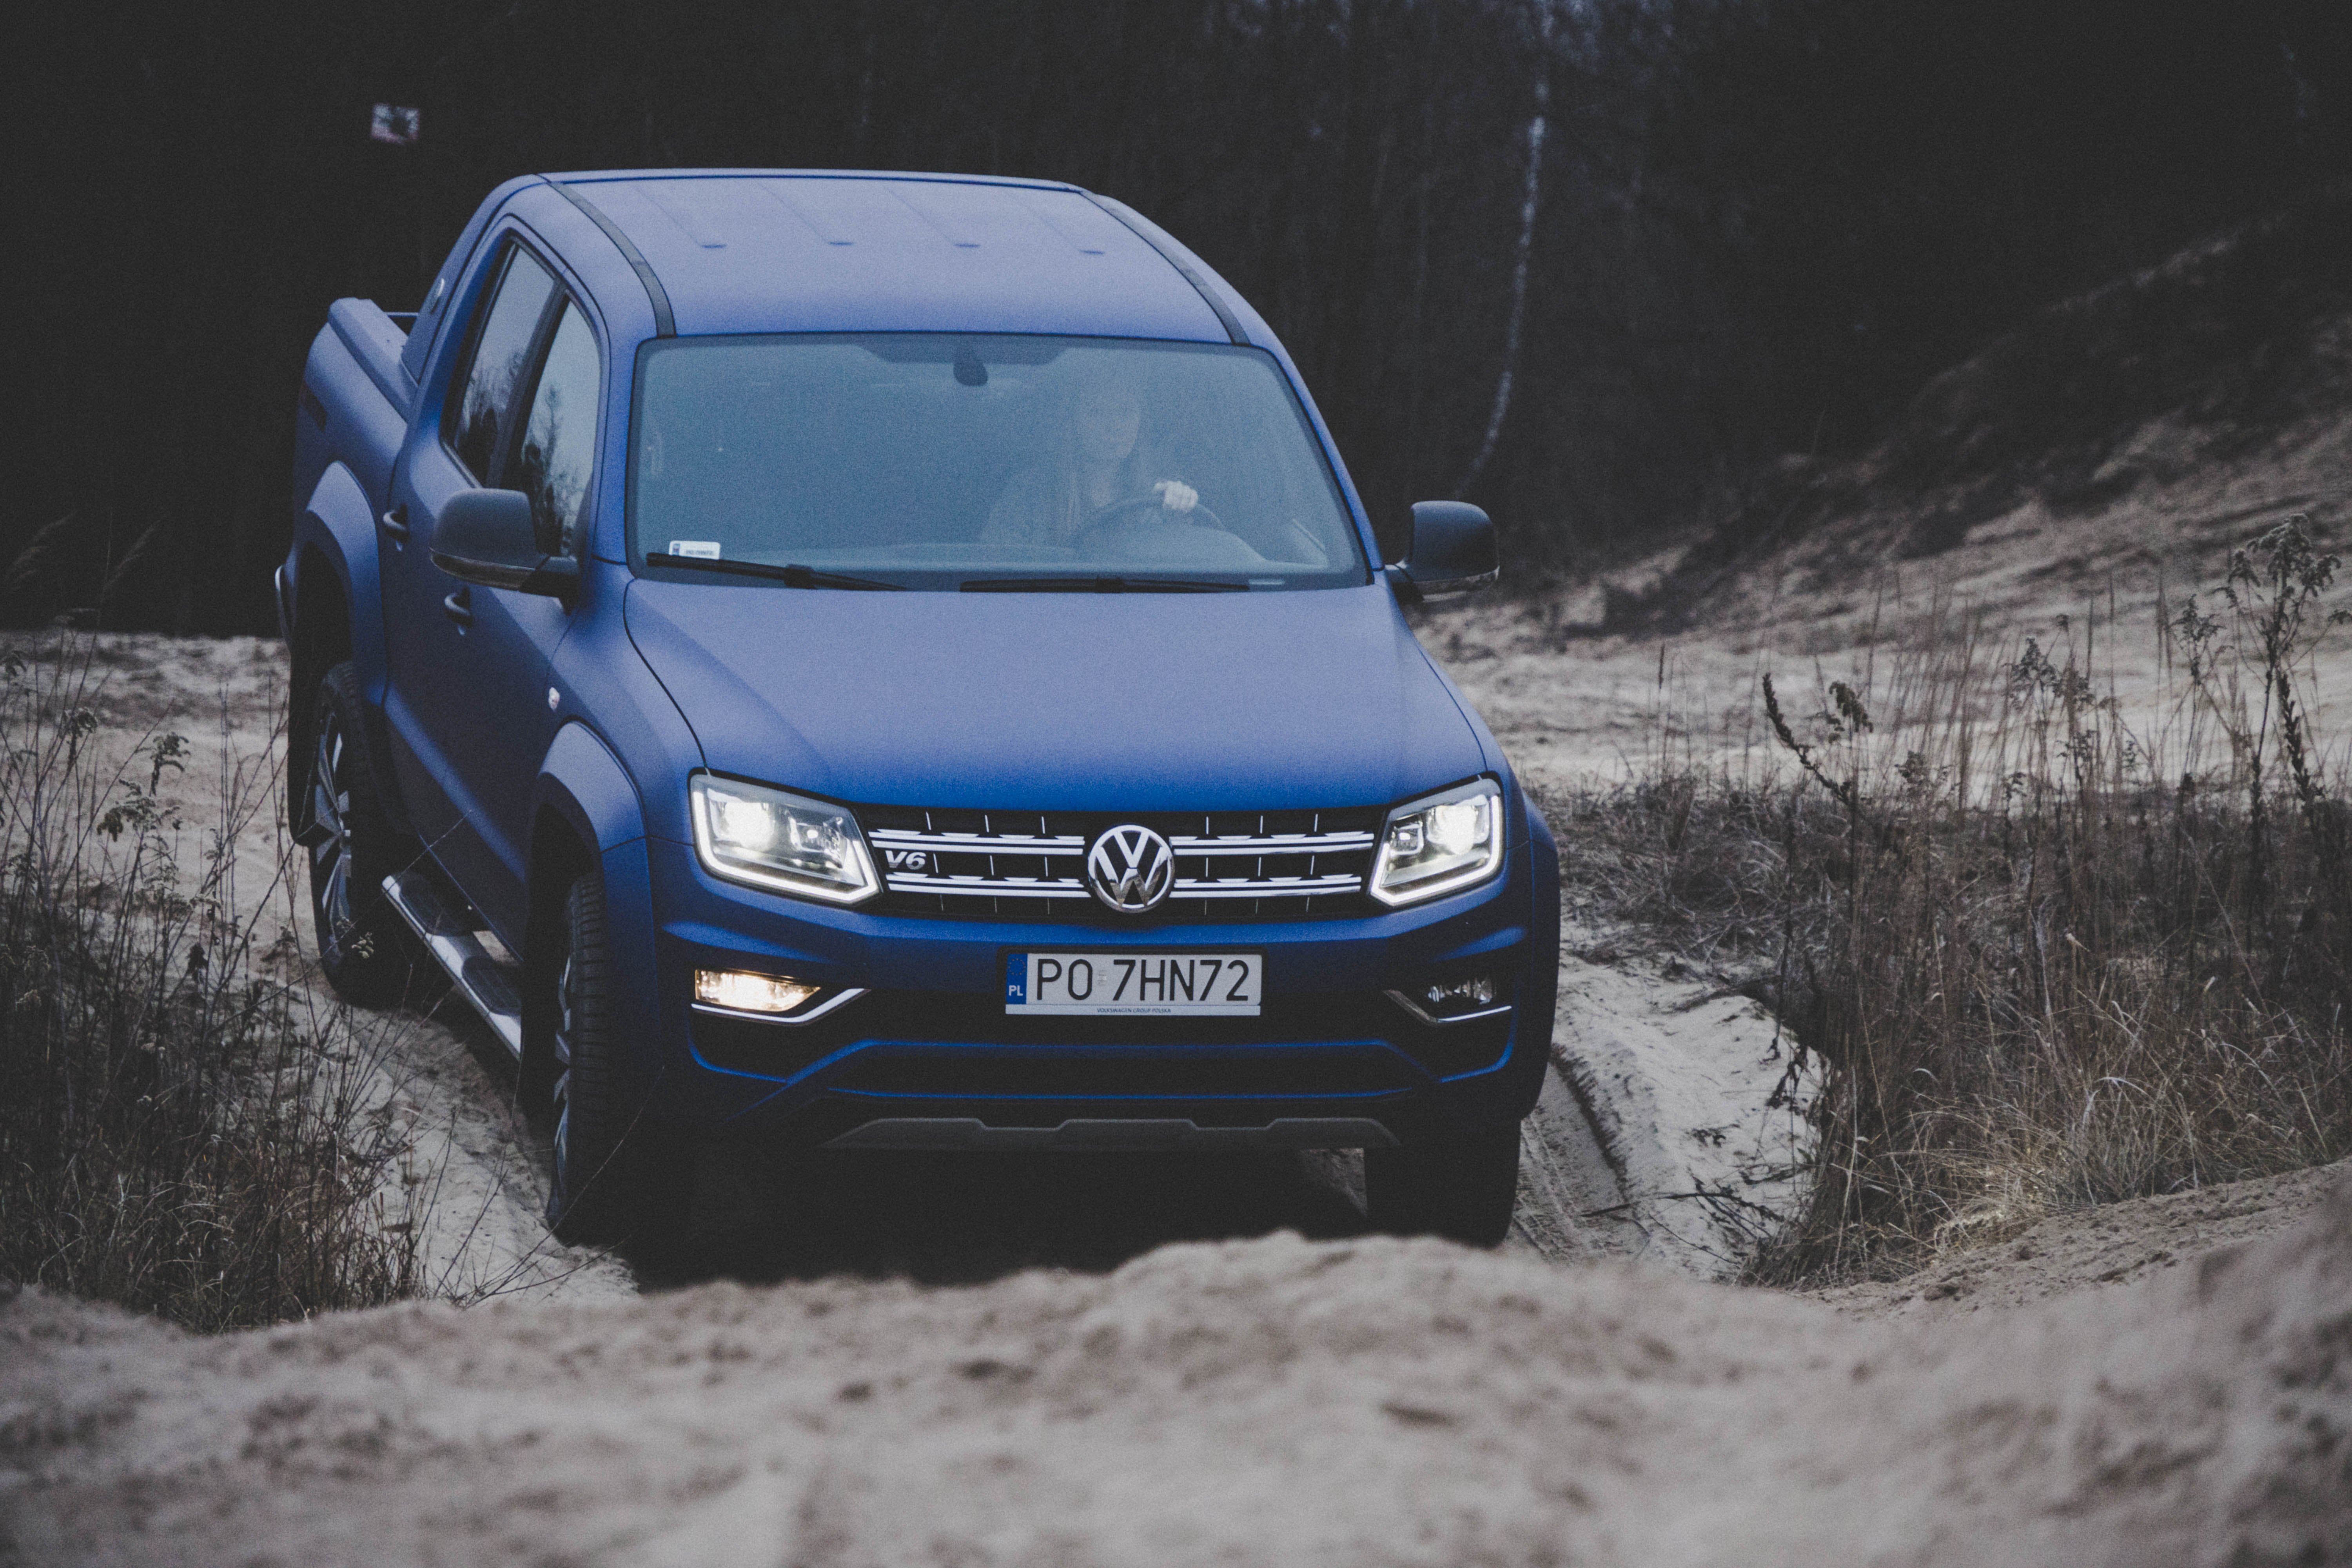 Volkswagen Amarok - test. Najmocniejszy pickup na rynku w Polsce